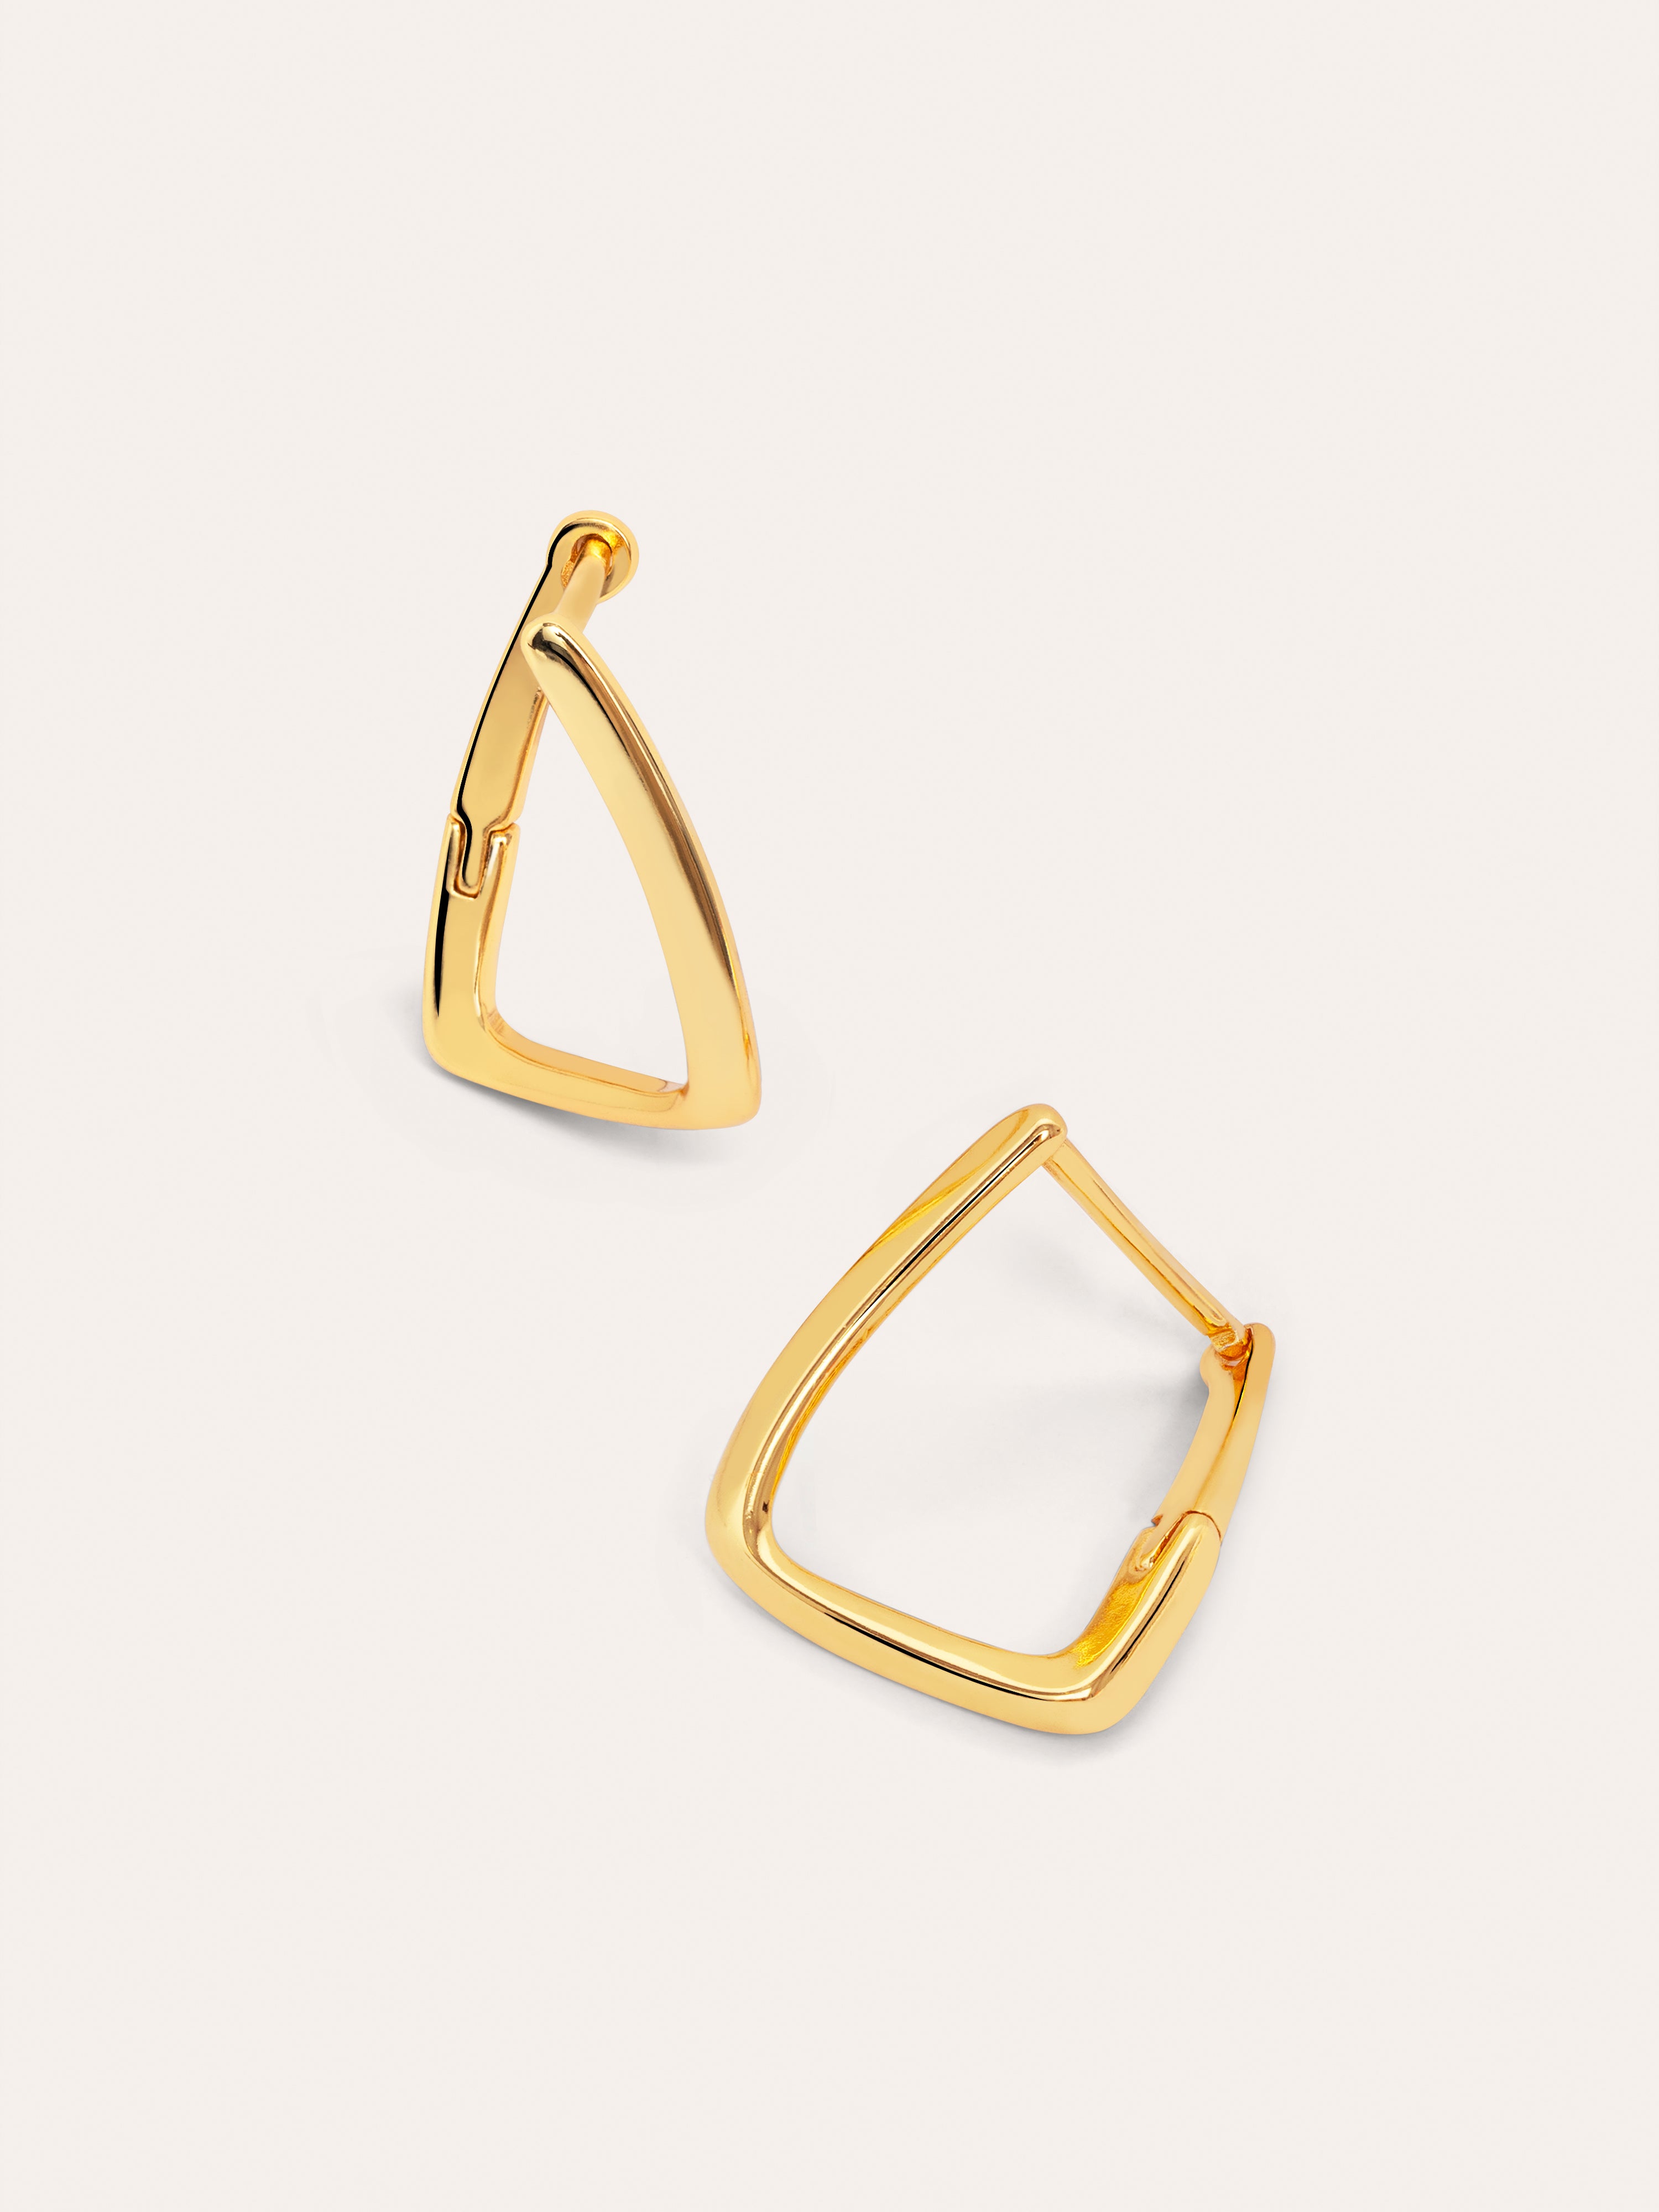  Prisma Gold Earrings